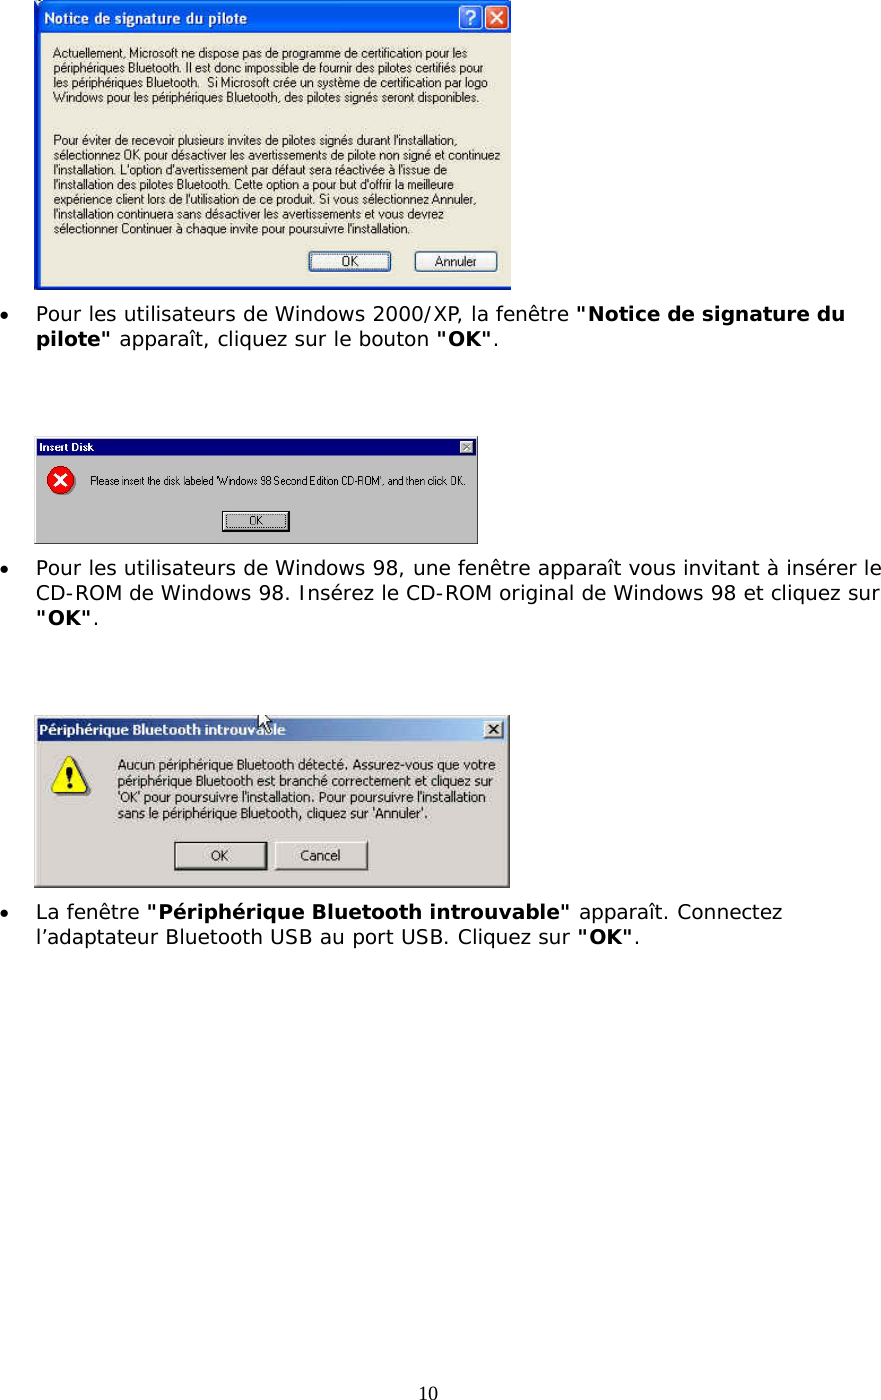 10  •  Pour les utilisateurs de Windows 2000/XP, la fenêtre &quot;Notice de signature du pilote&quot; apparaît, cliquez sur le bouton &quot;OK&quot;.    •  Pour les utilisateurs de Windows 98, une fenêtre apparaît vous invitant à insérer le CD-ROM de Windows 98. Insérez le CD-ROM original de Windows 98 et cliquez sur &quot;OK&quot;.    •  La fenêtre &quot;Périphérique Bluetooth introuvable&quot; apparaît. Connectez l’adaptateur Bluetooth USB au port USB. Cliquez sur &quot;OK&quot;. 